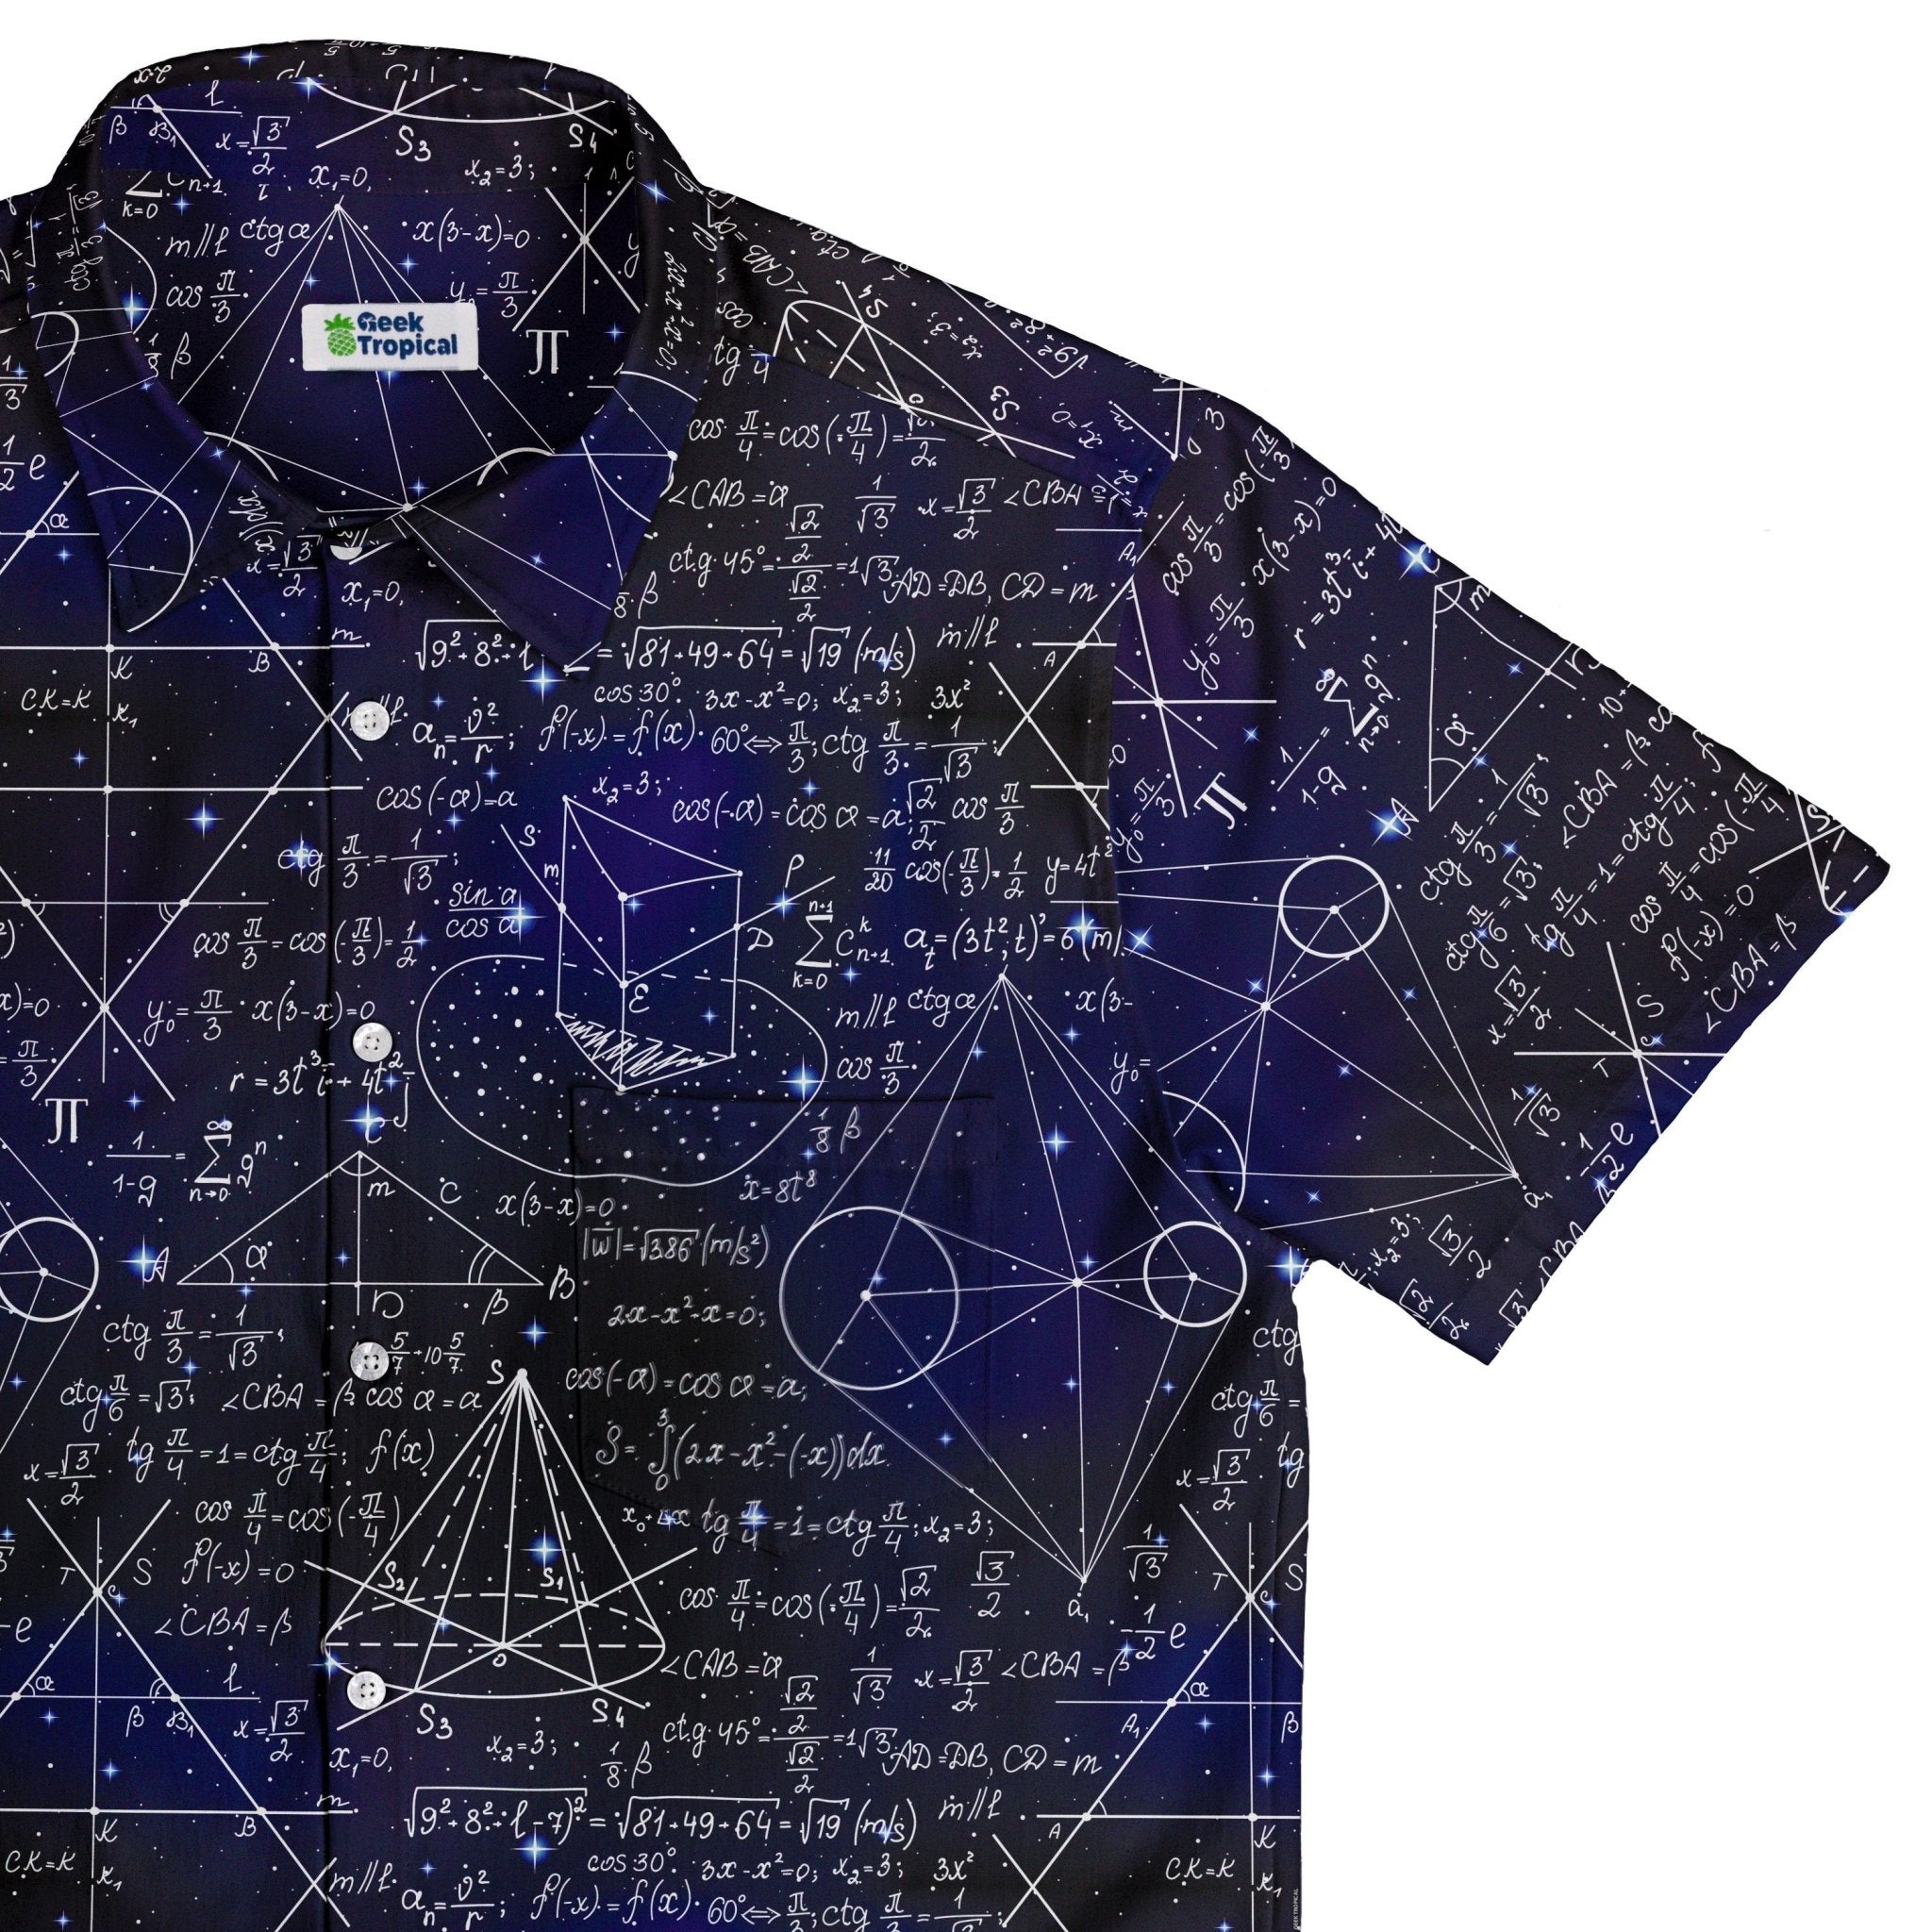 Ready-to-Ship Math And Physics Space Button Up Shirt - adult sizing - mathematics print - Maximalist Patterns